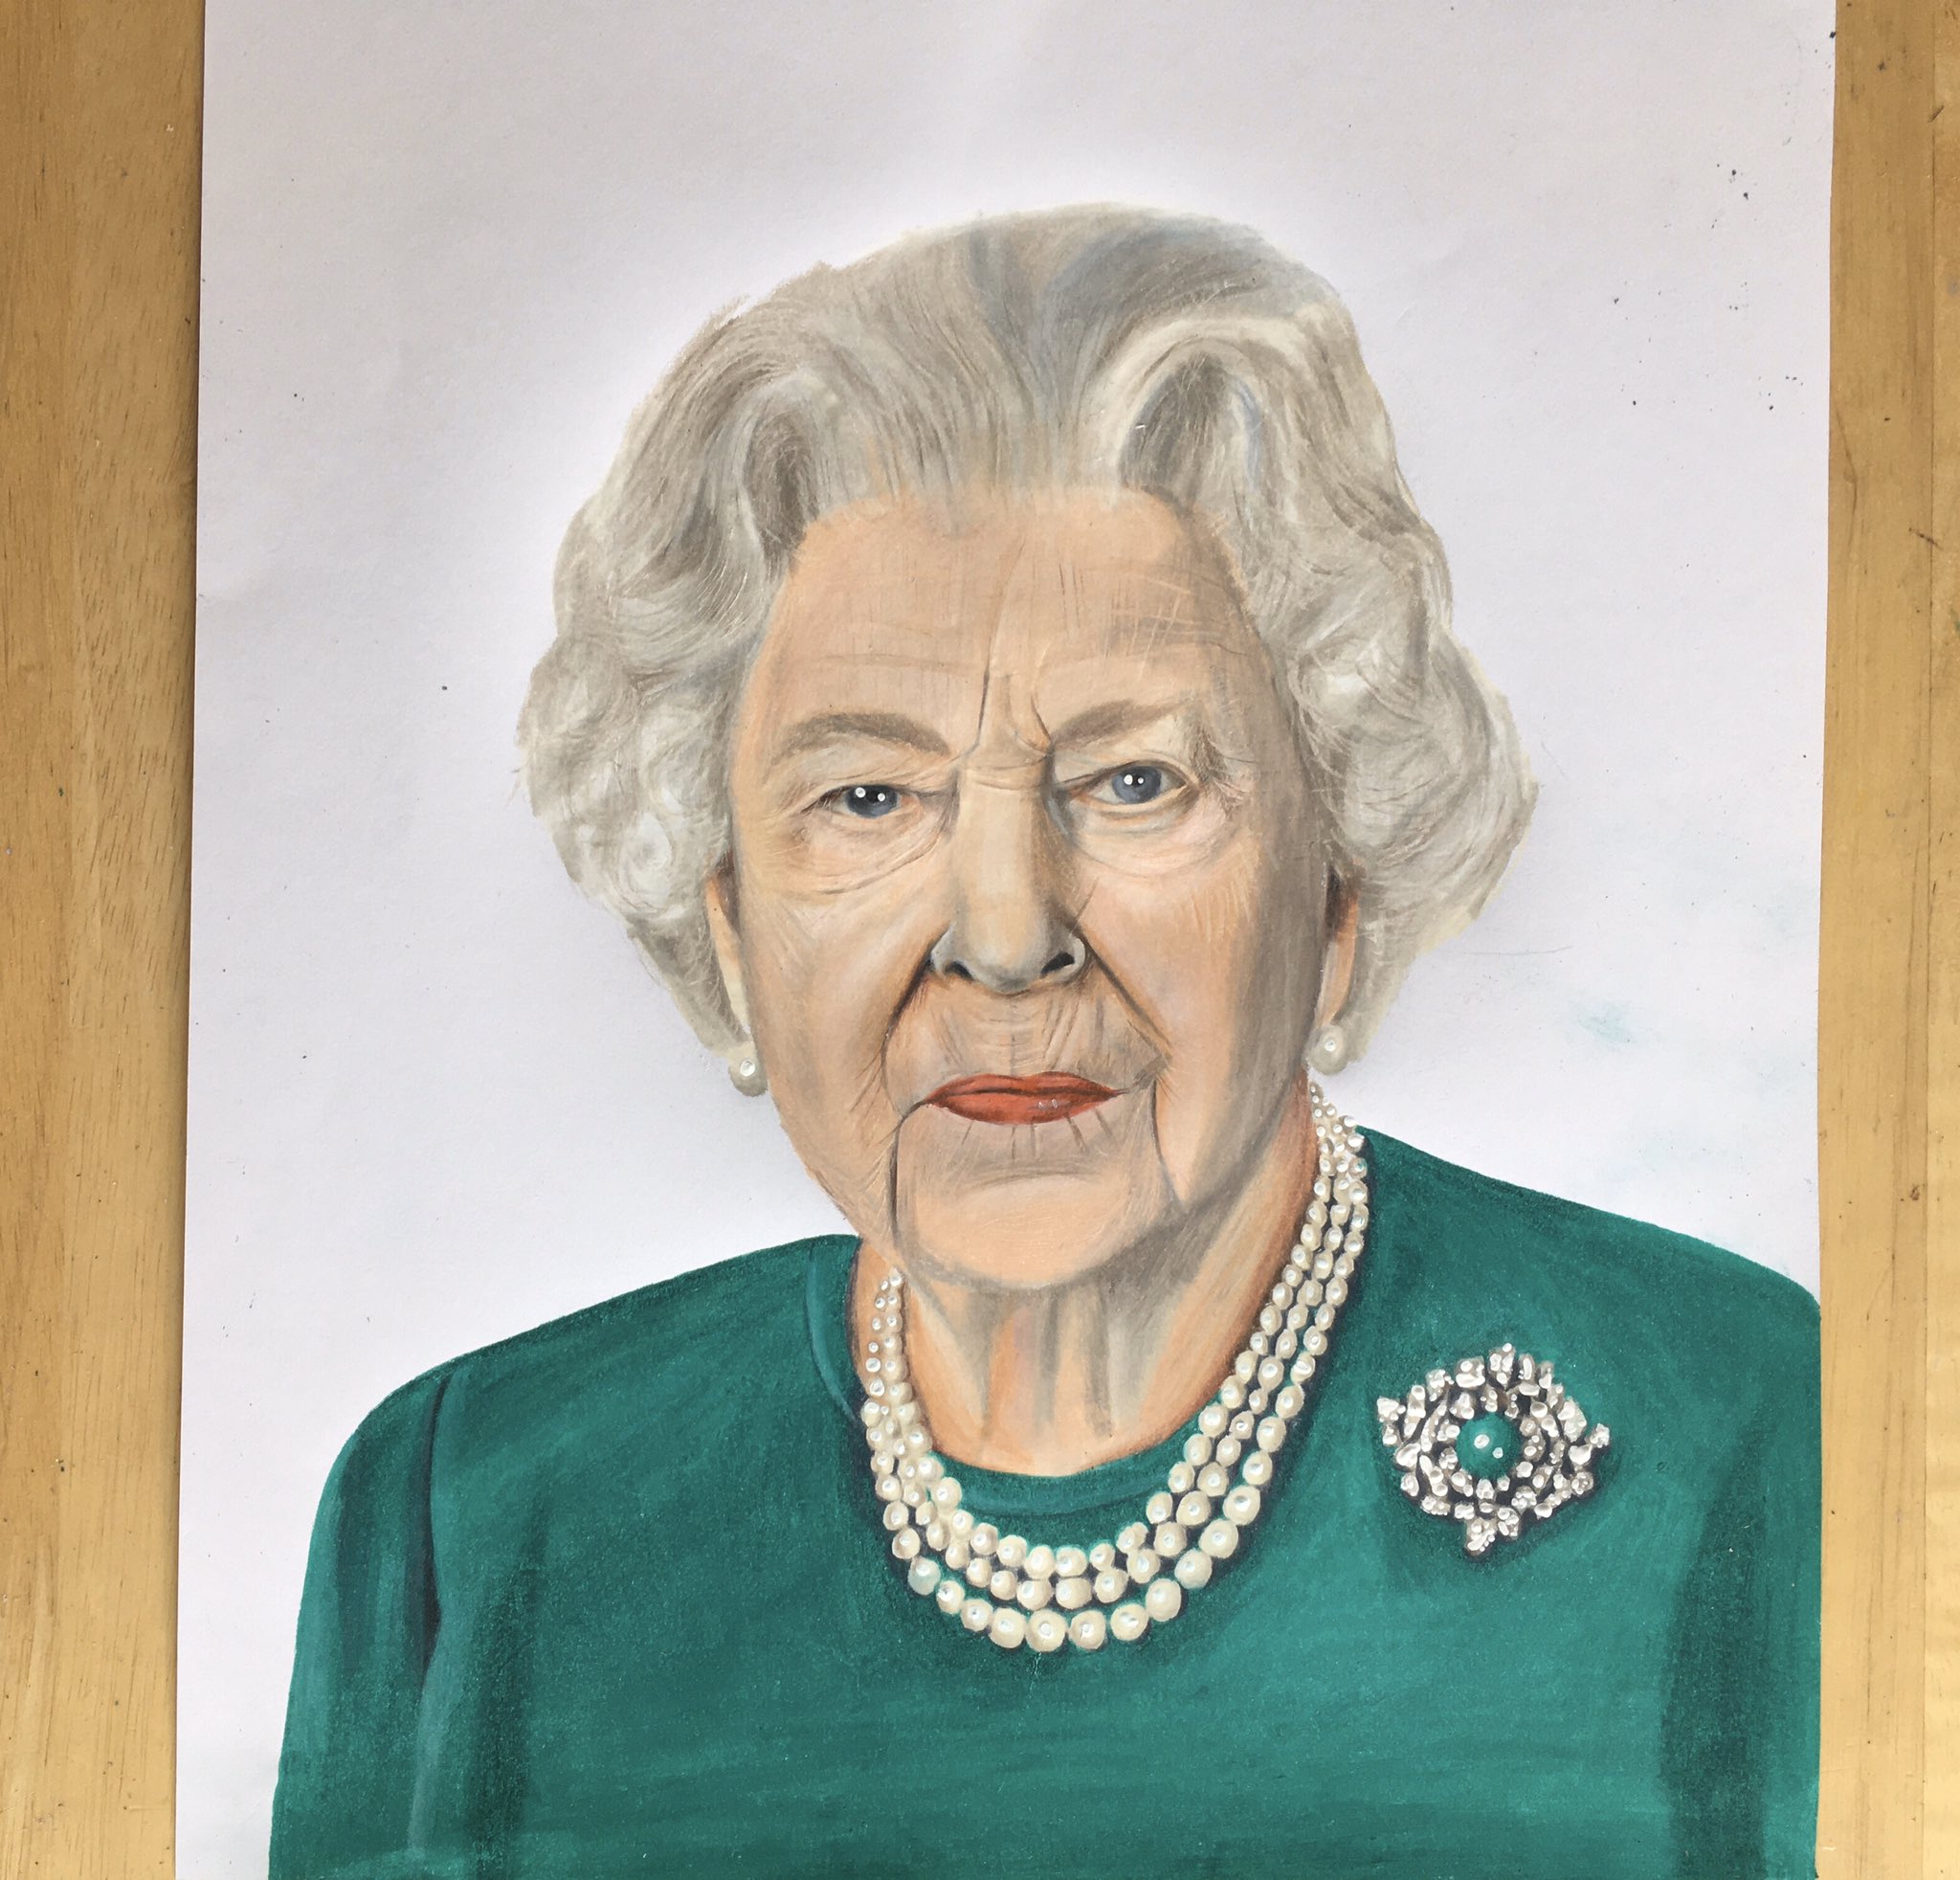 Queen Elizabeth 2 Pencil drawing by Anna Maria | Artfinder